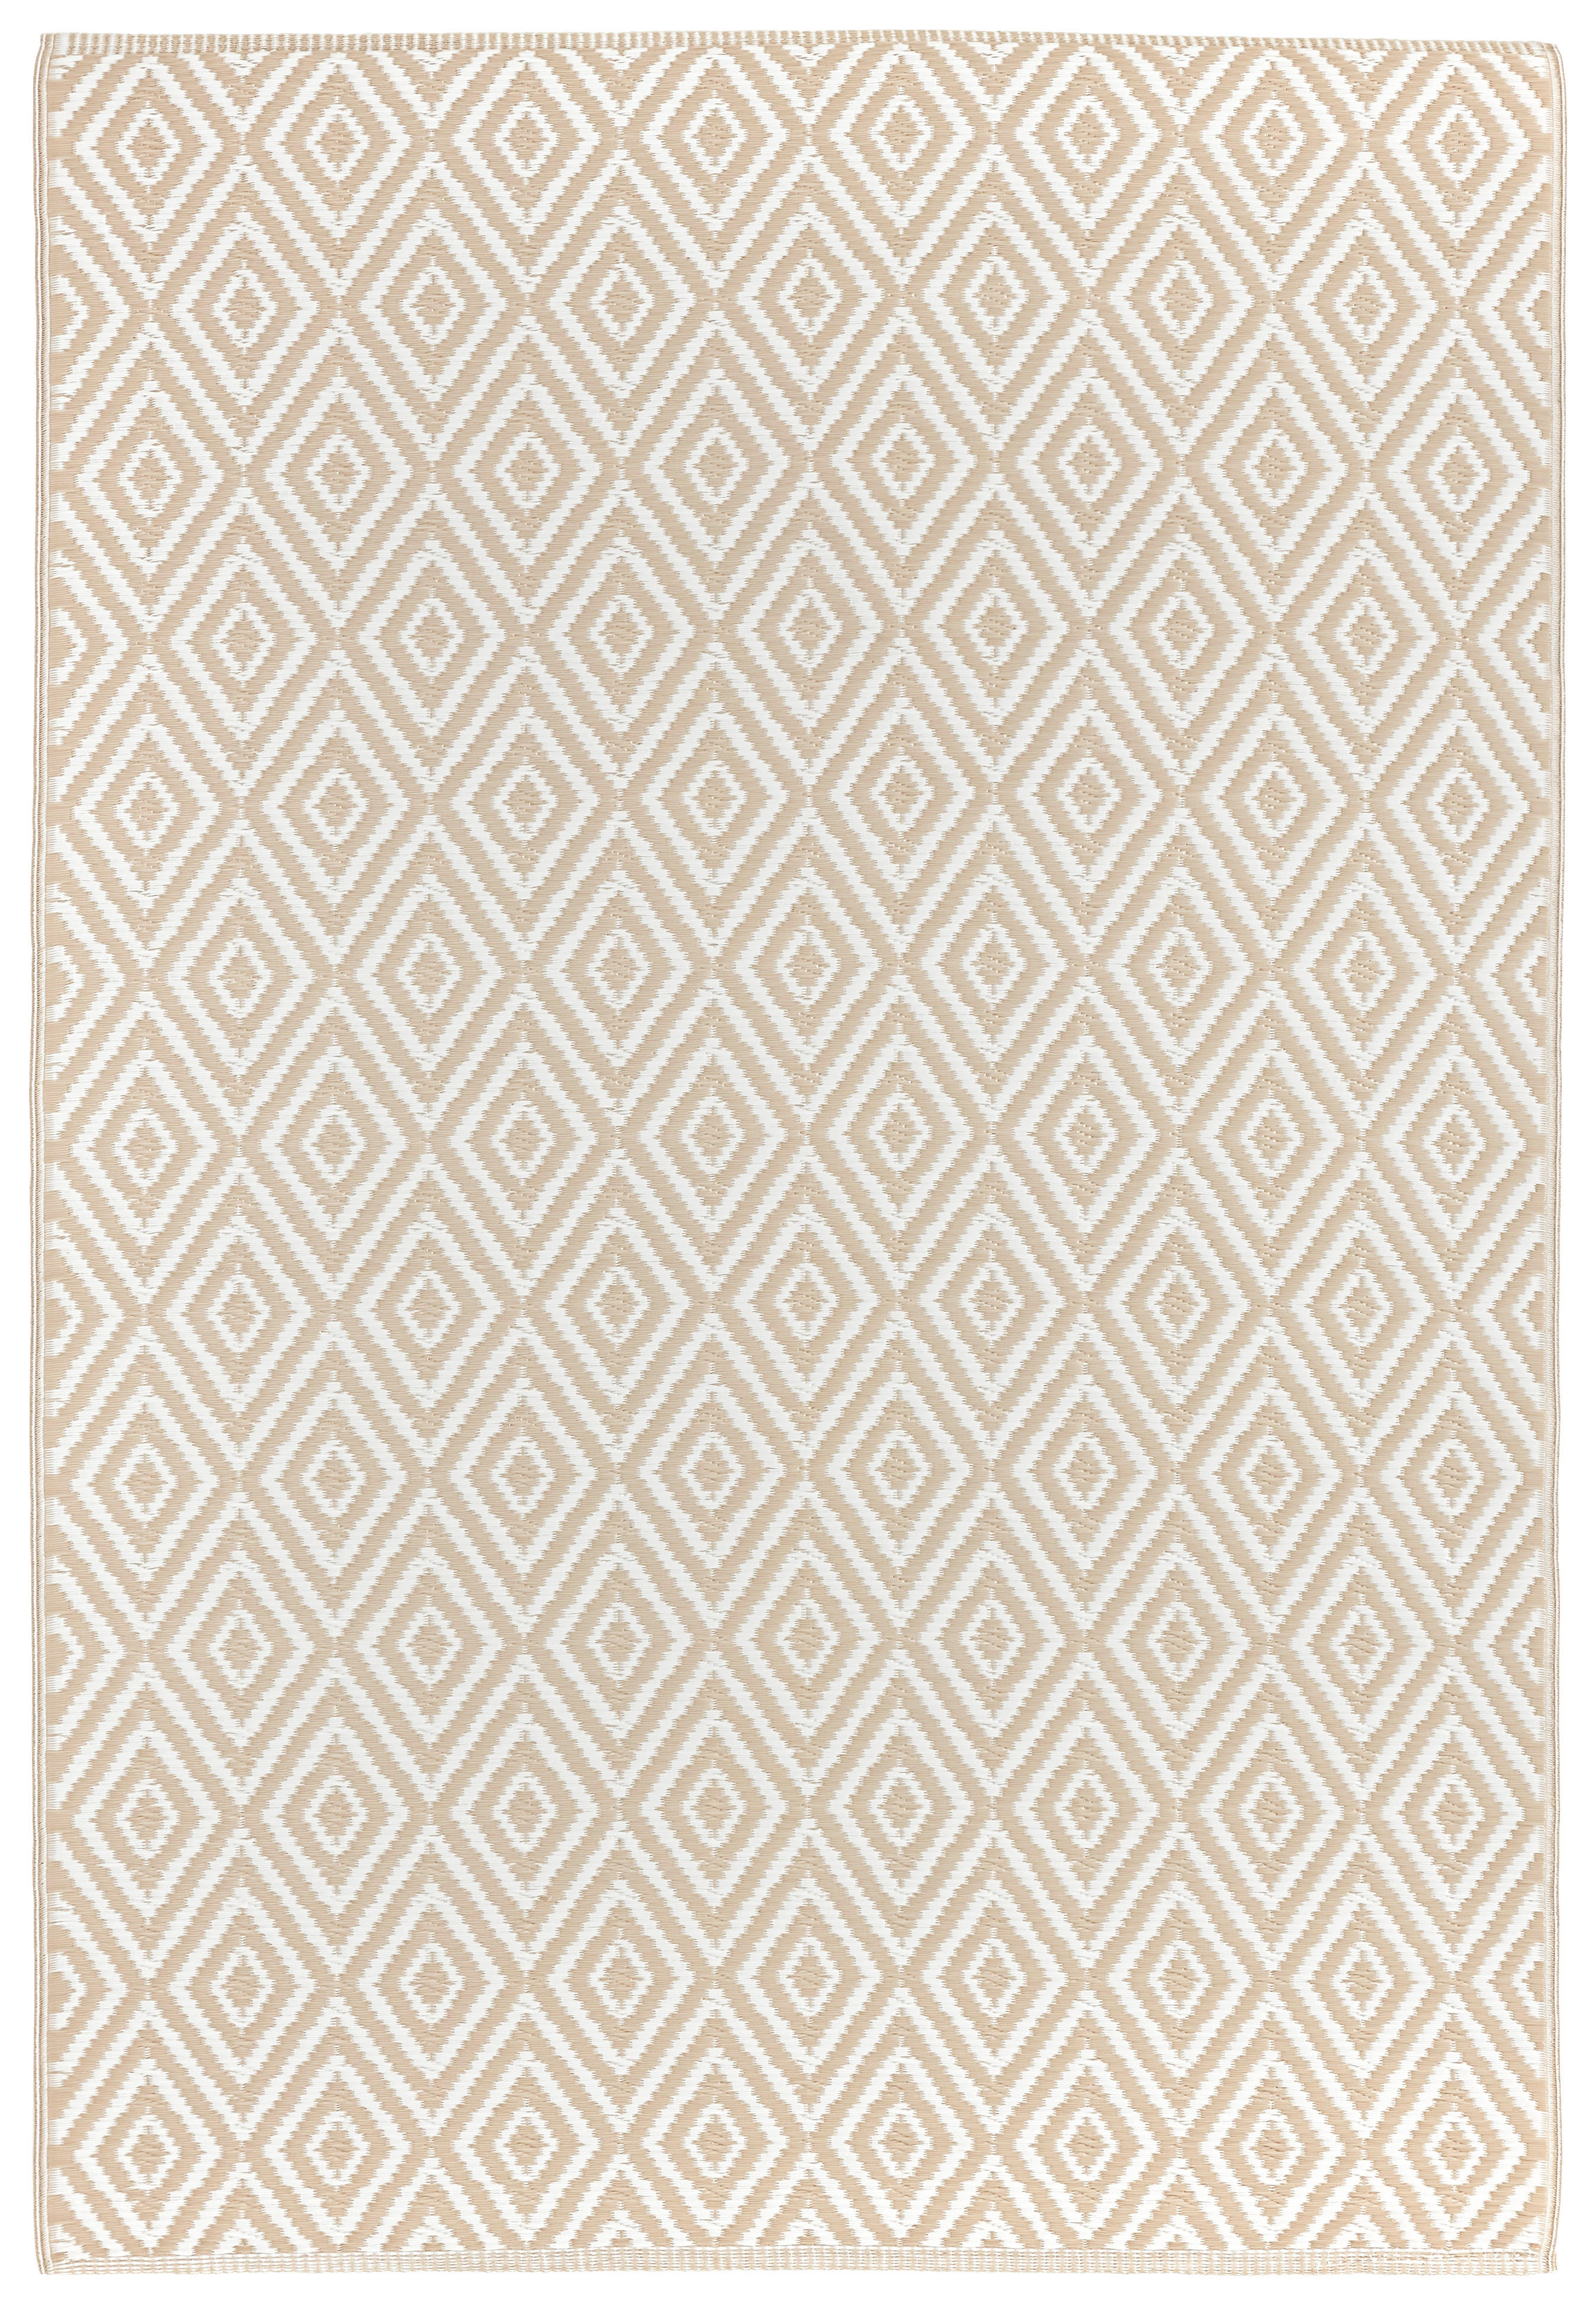 OUTDOORTEPPICH 120/180 cm Ibiza  - Beige/Weiß, Trend, Textil (120/180cm) - Boxxx